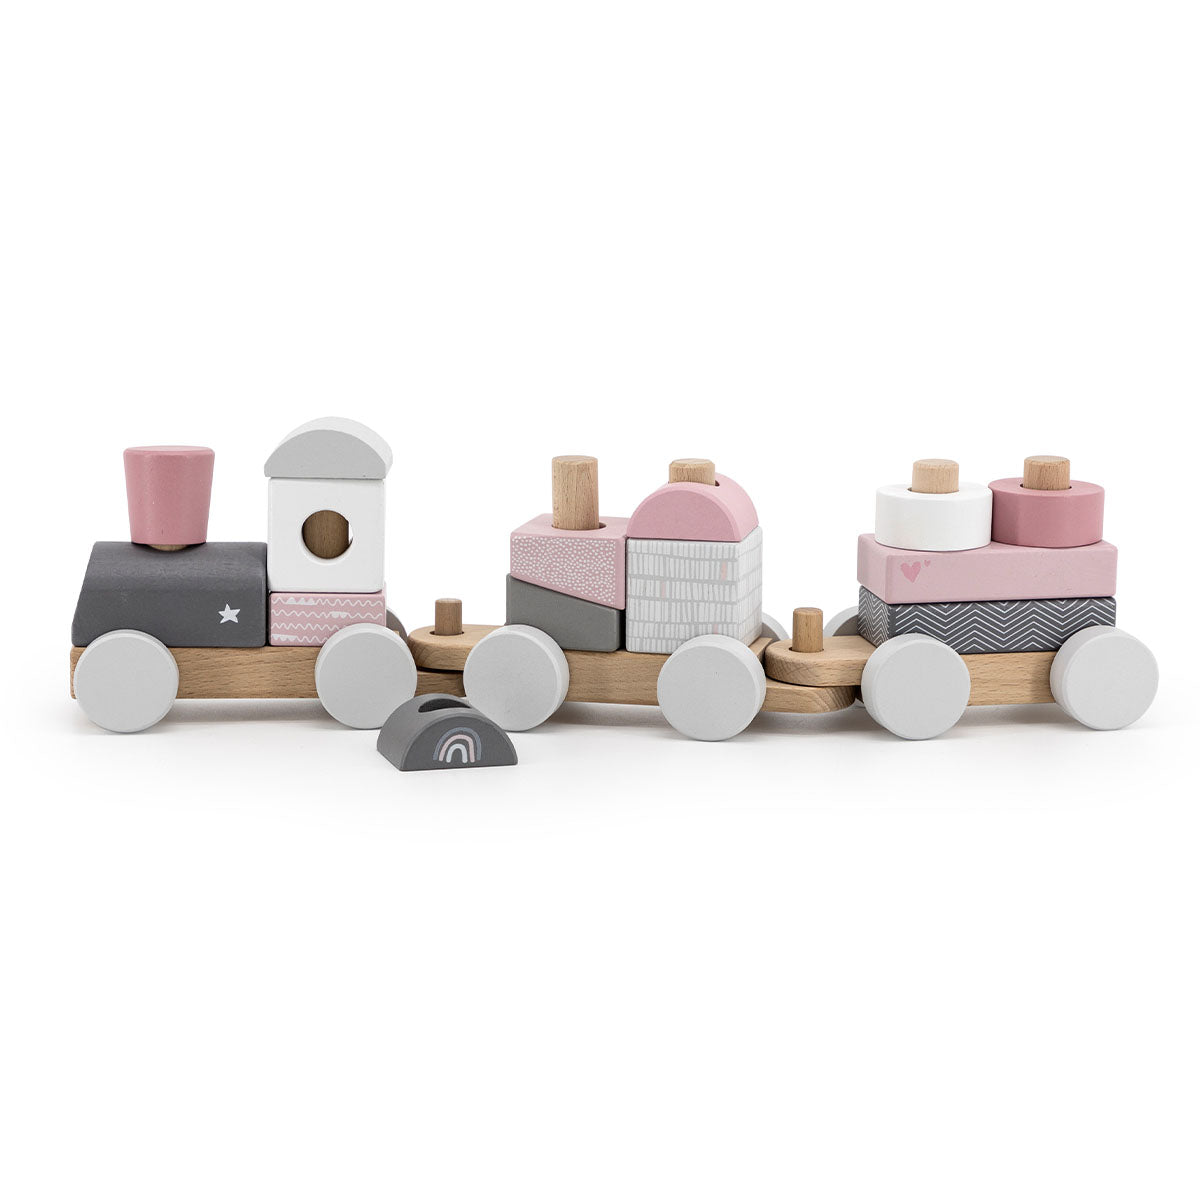 Tjoeke-tjoeke, daar komt de Label Label blokkentrein roze aan! Deze houten trein bestaande uit een locomotief, twee wagonnetjes en maar liefst 14 bouwblokken. De trein is gemaakt van duurzaam FSC-hout. VanZus.